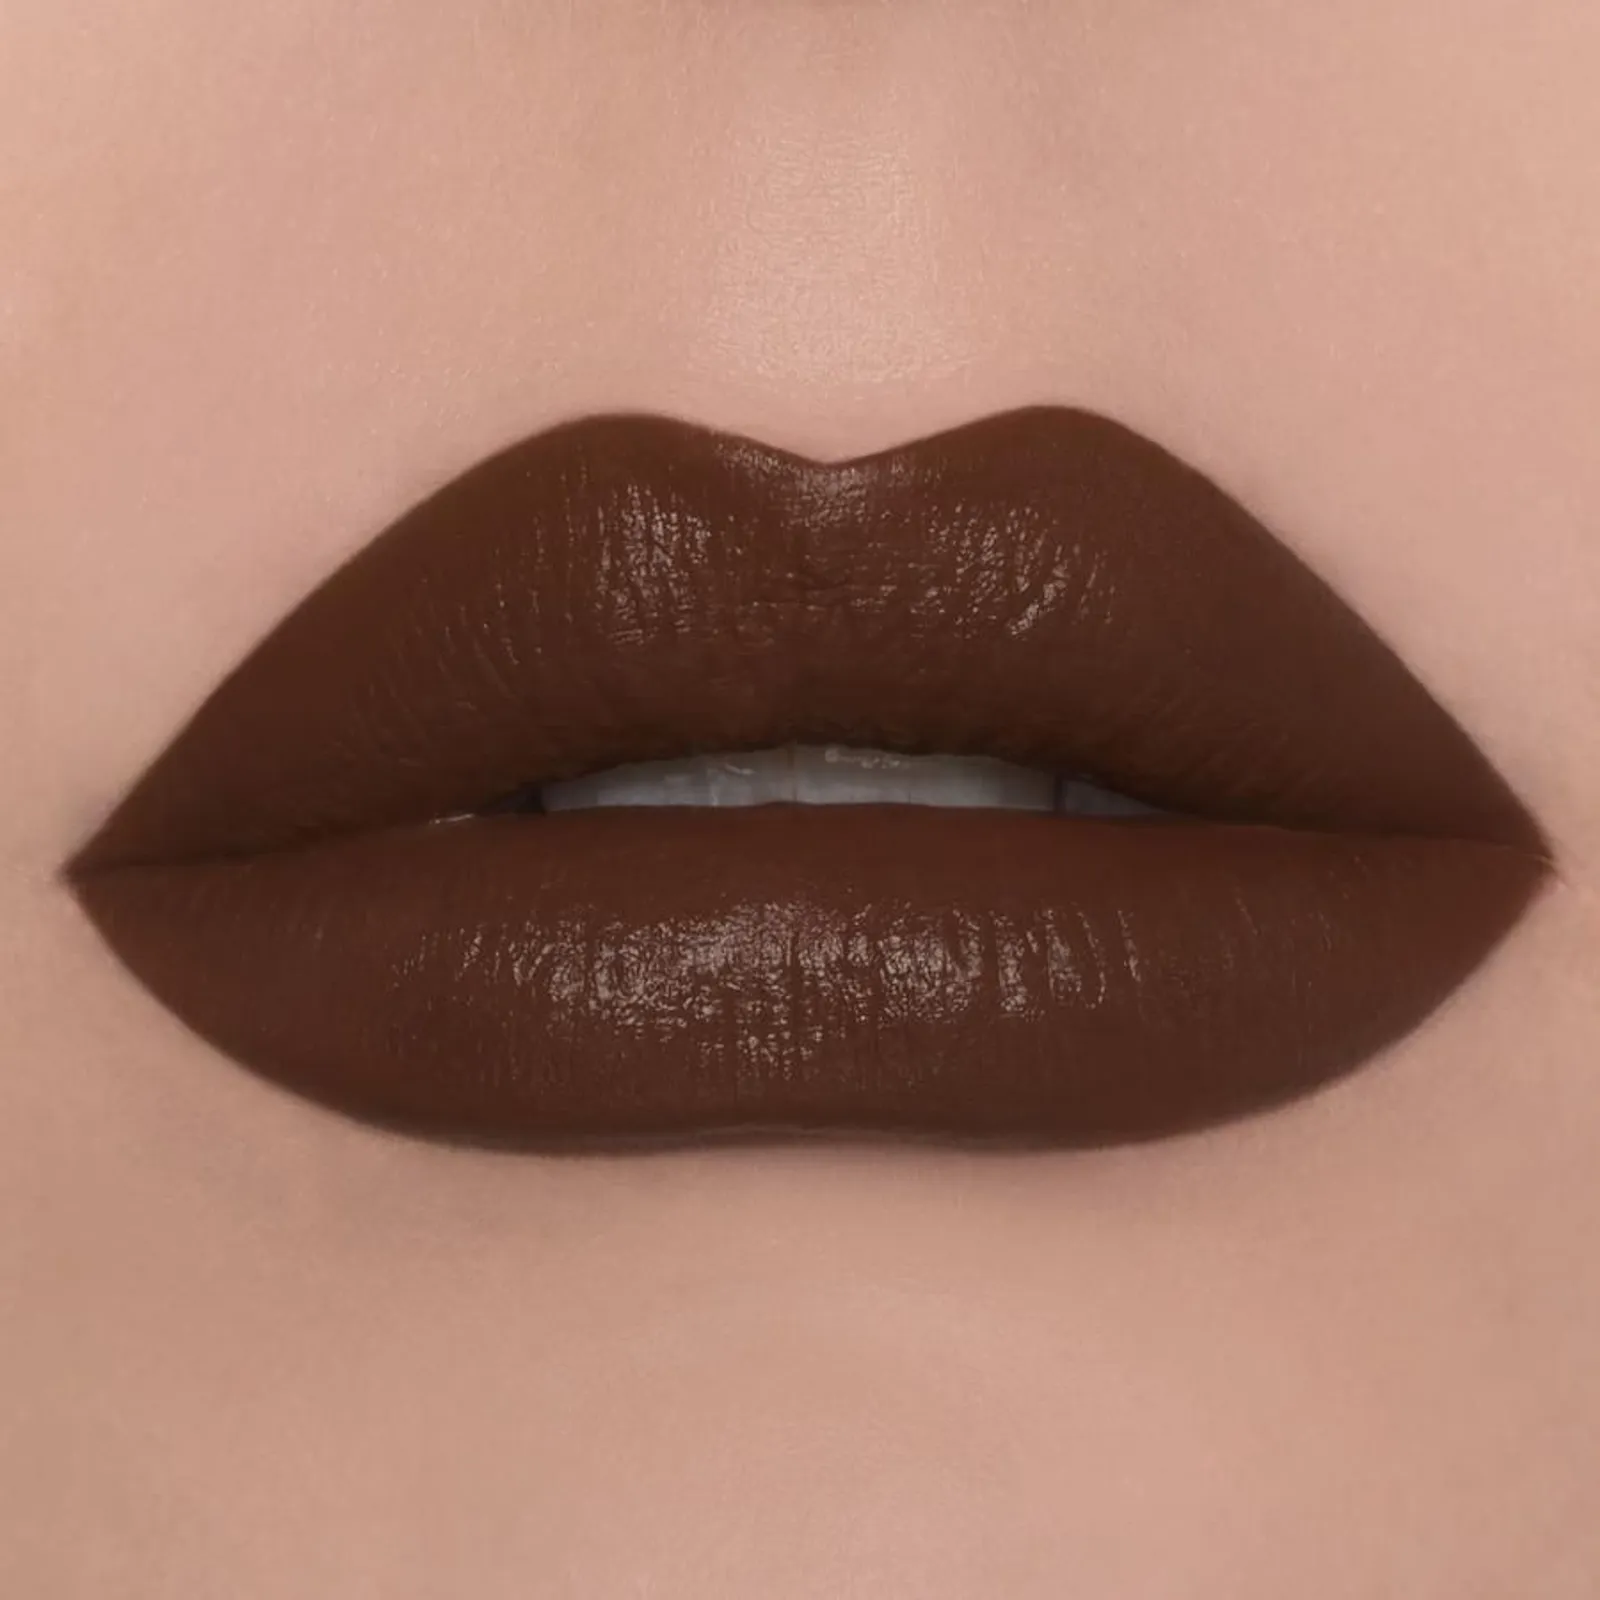 10 Warna Lipstik untuk Kulit Sawo Matang agar Terlihat Fresh